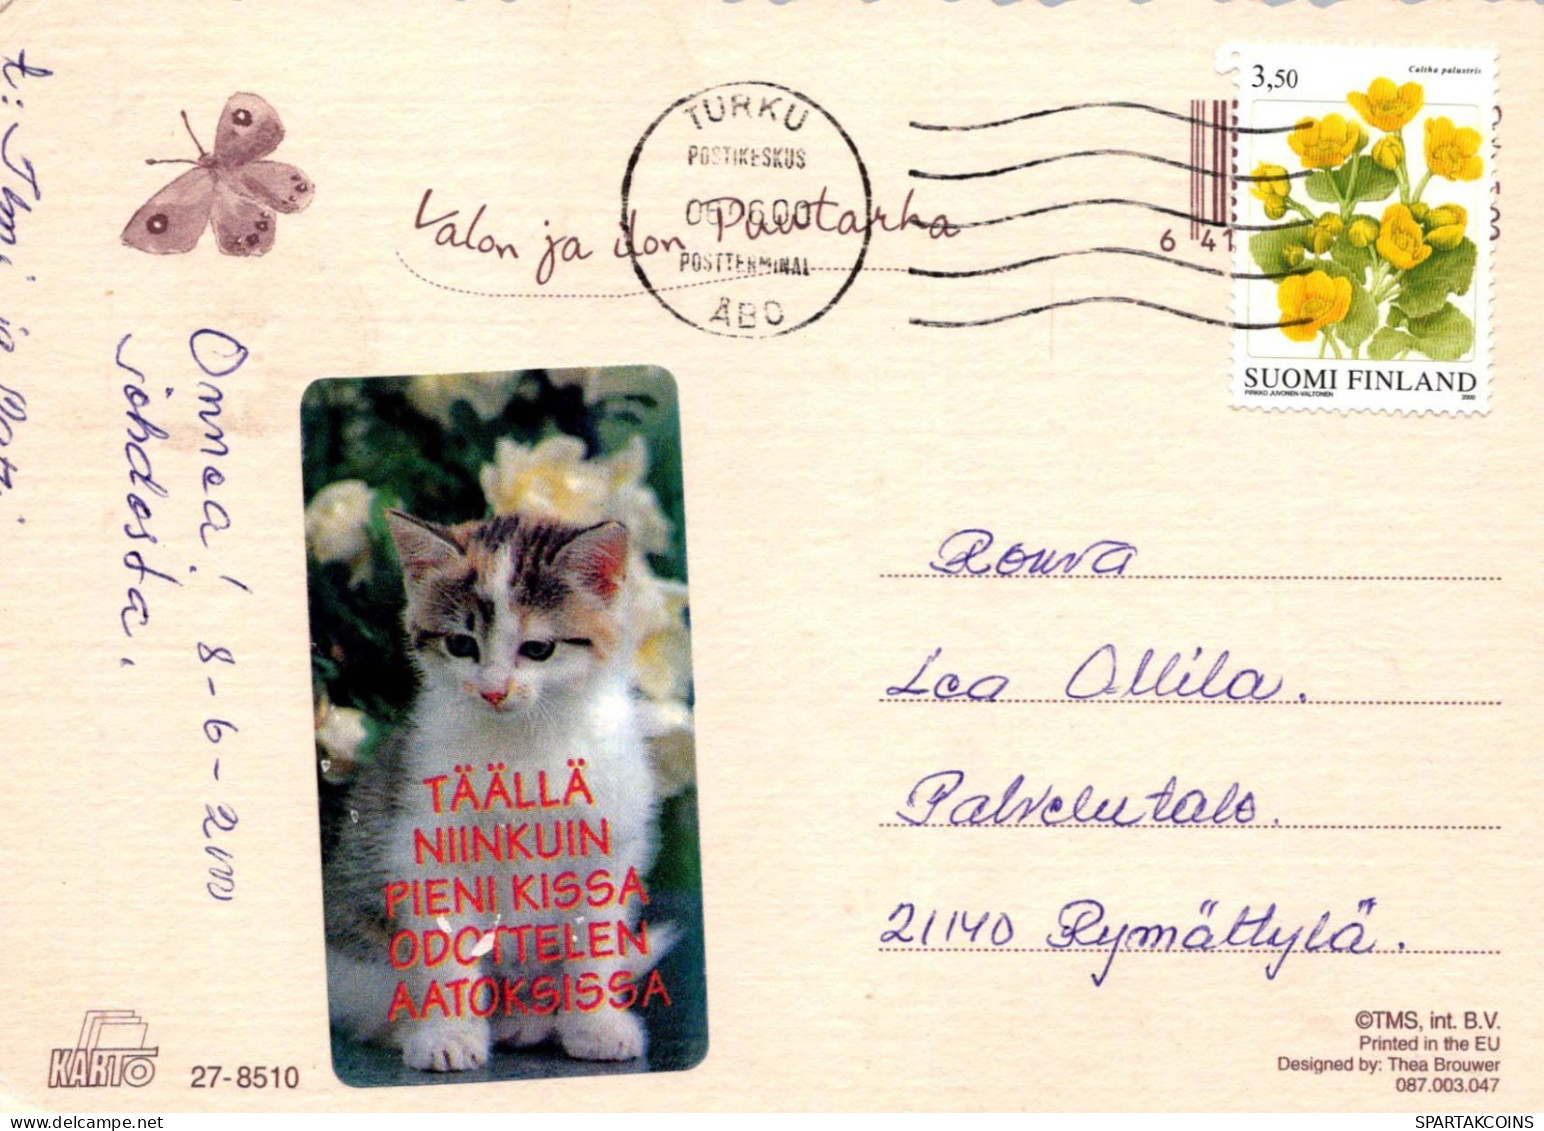 FLEURS Vintage Carte Postale CPSM #PBZ462.A - Fleurs